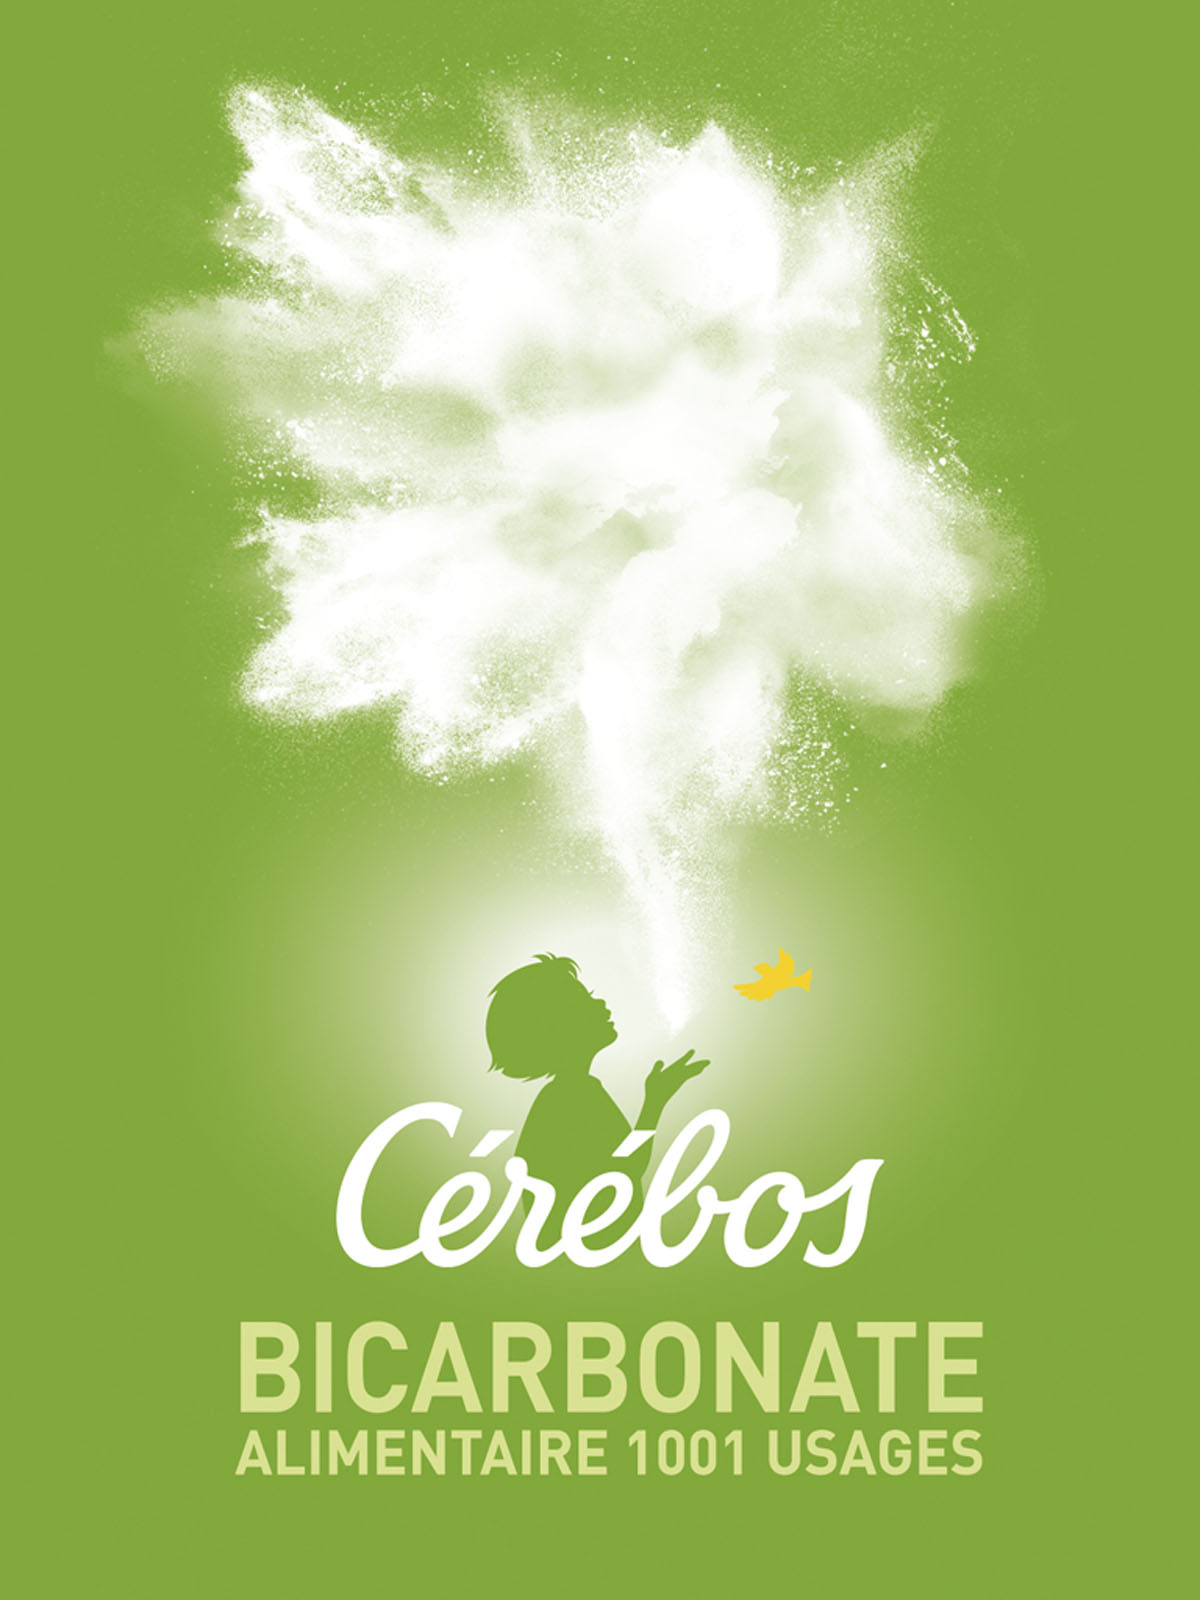 Cerebos Bicarbonate